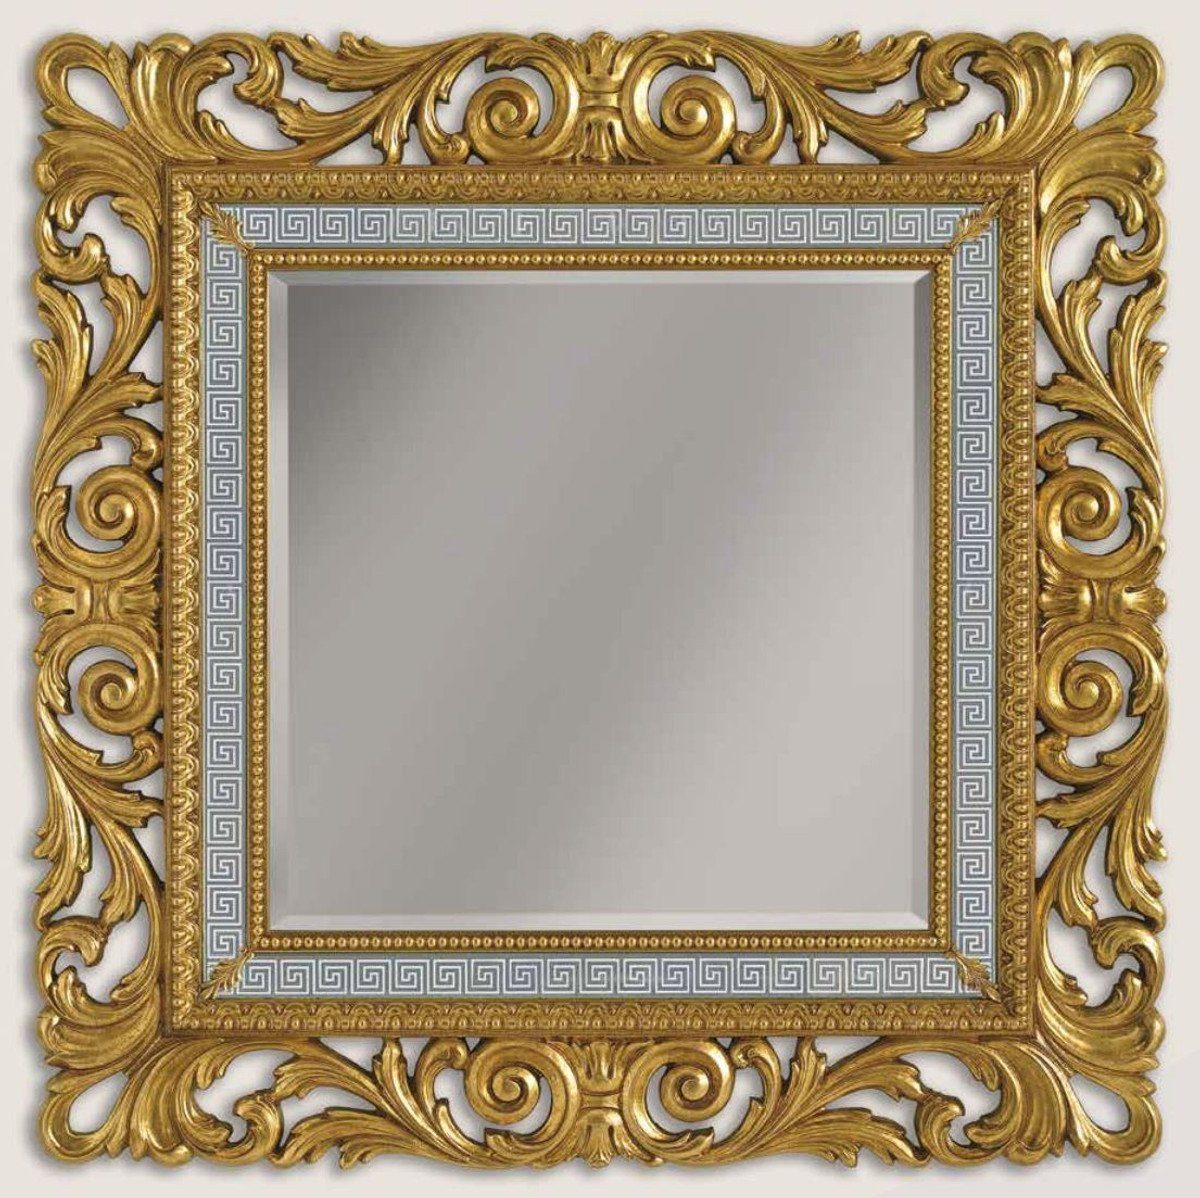 Casa Padrino Barockspiegel Luxus Barock Spiegel Gold / Grau / Weiß - Handgefertigter Wandspiegel im Barockstil - Barock Möbel - Luxus Qualität - Made in Italy